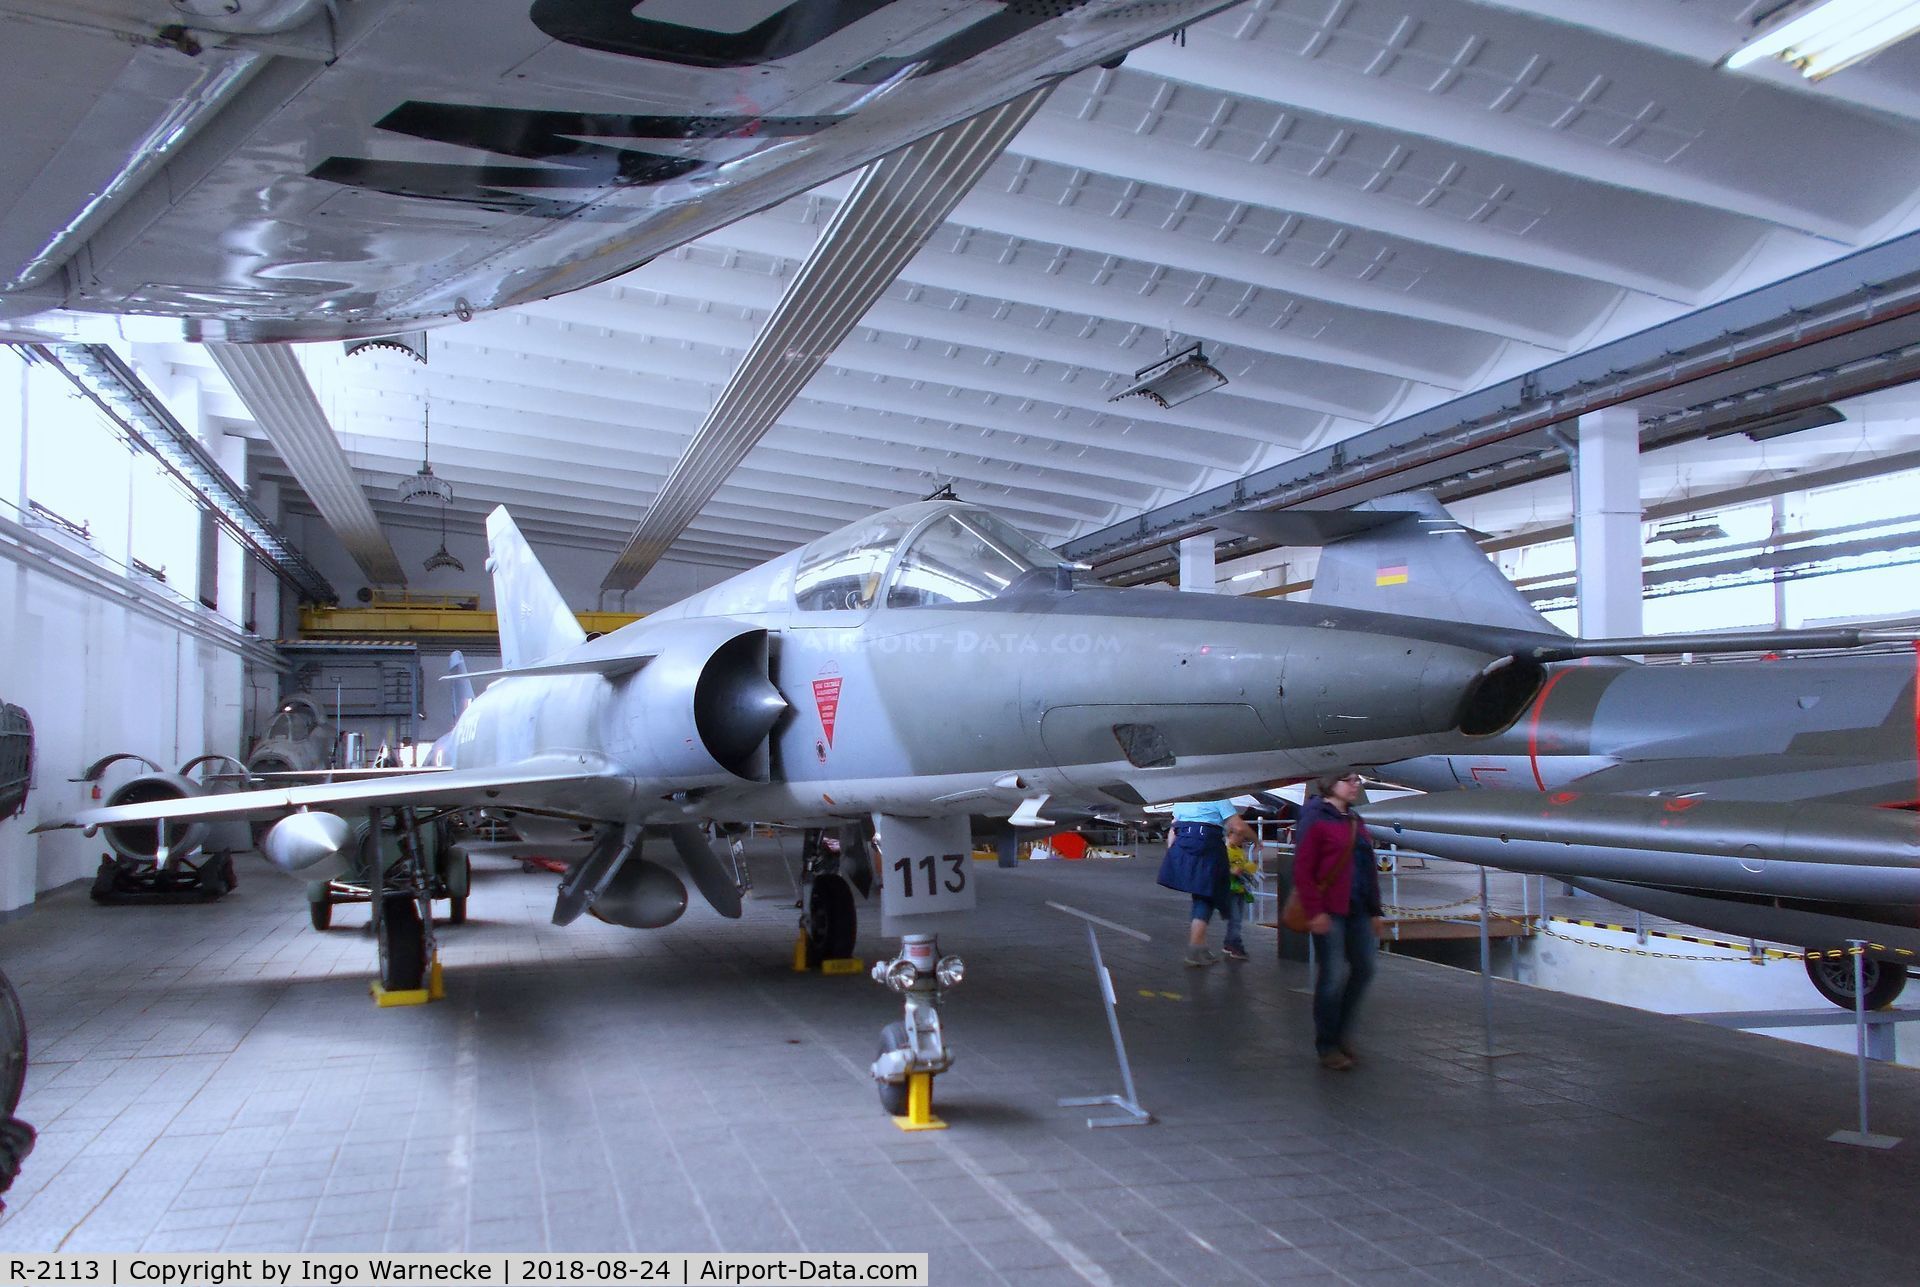 R-2113, Dassault Mirage IIIRS C/N 17-26-145/1044, Dassault Mirage III RS at the Museum für Luftfahrt u. Technik, Wernigerode